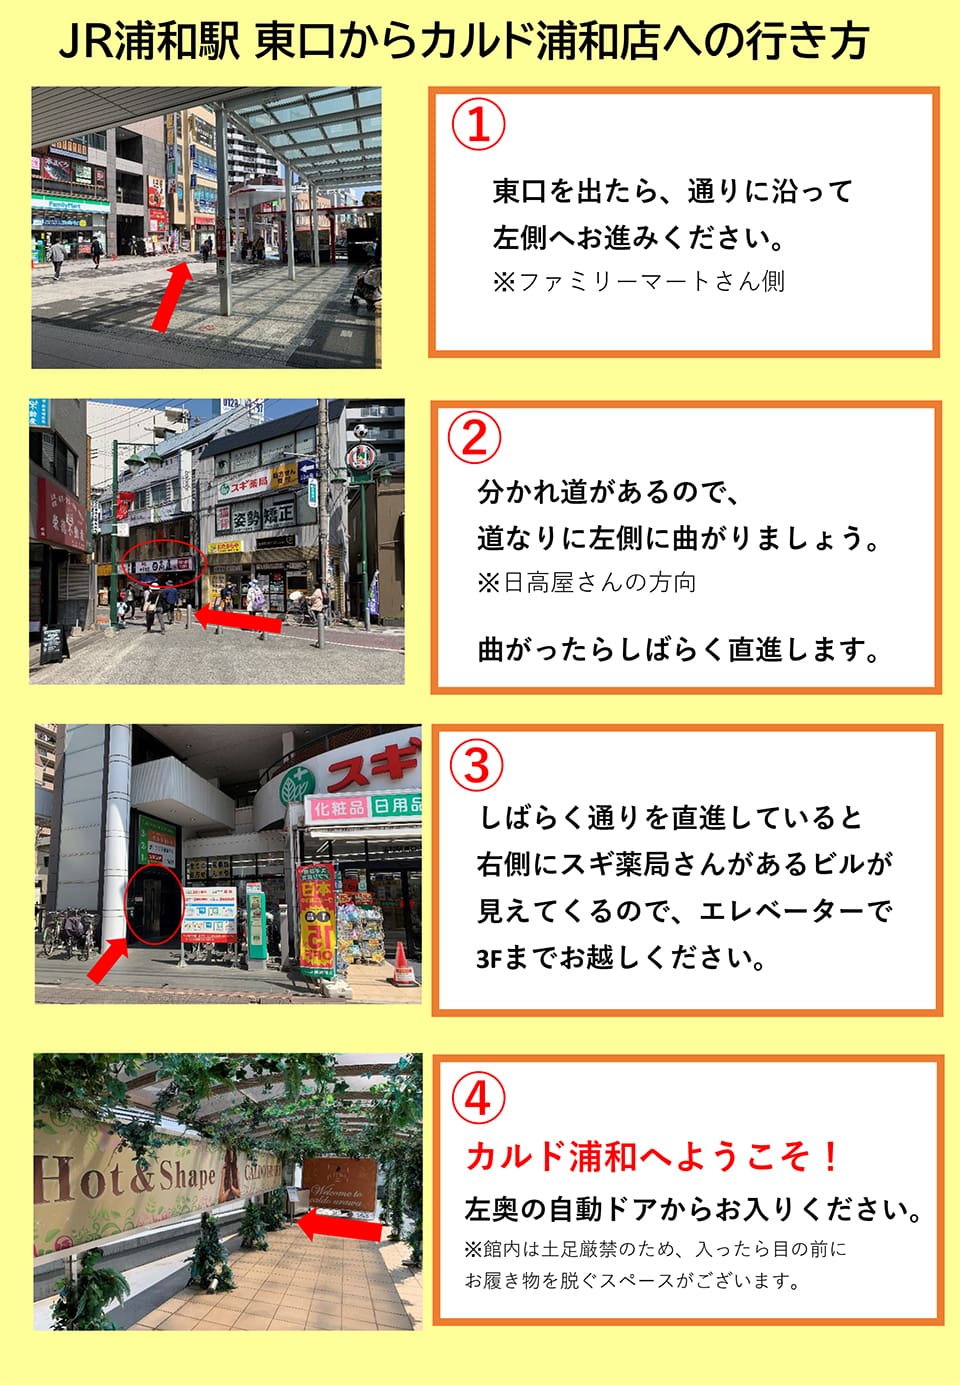 JR浦和駅東口からカルド浦和店への行き方：東口を出たら、通りに沿って左側へお進みください(ファミリーマートさん側)→分かれ道があるので、道なりに左側に曲がりましょう(日高屋さんの方向)曲がったらしばらく直進します→しばらく通りを直進していると右側にスギ薬局さんがあるビルが見えてくるので、エレベーターで3Fまでお越しください→カルド浦和へようこそ！左奥の自動ドアからお入りください(館内は土足厳禁のため、入ったら目の前にお履き物を脱ぐスペースがございます)